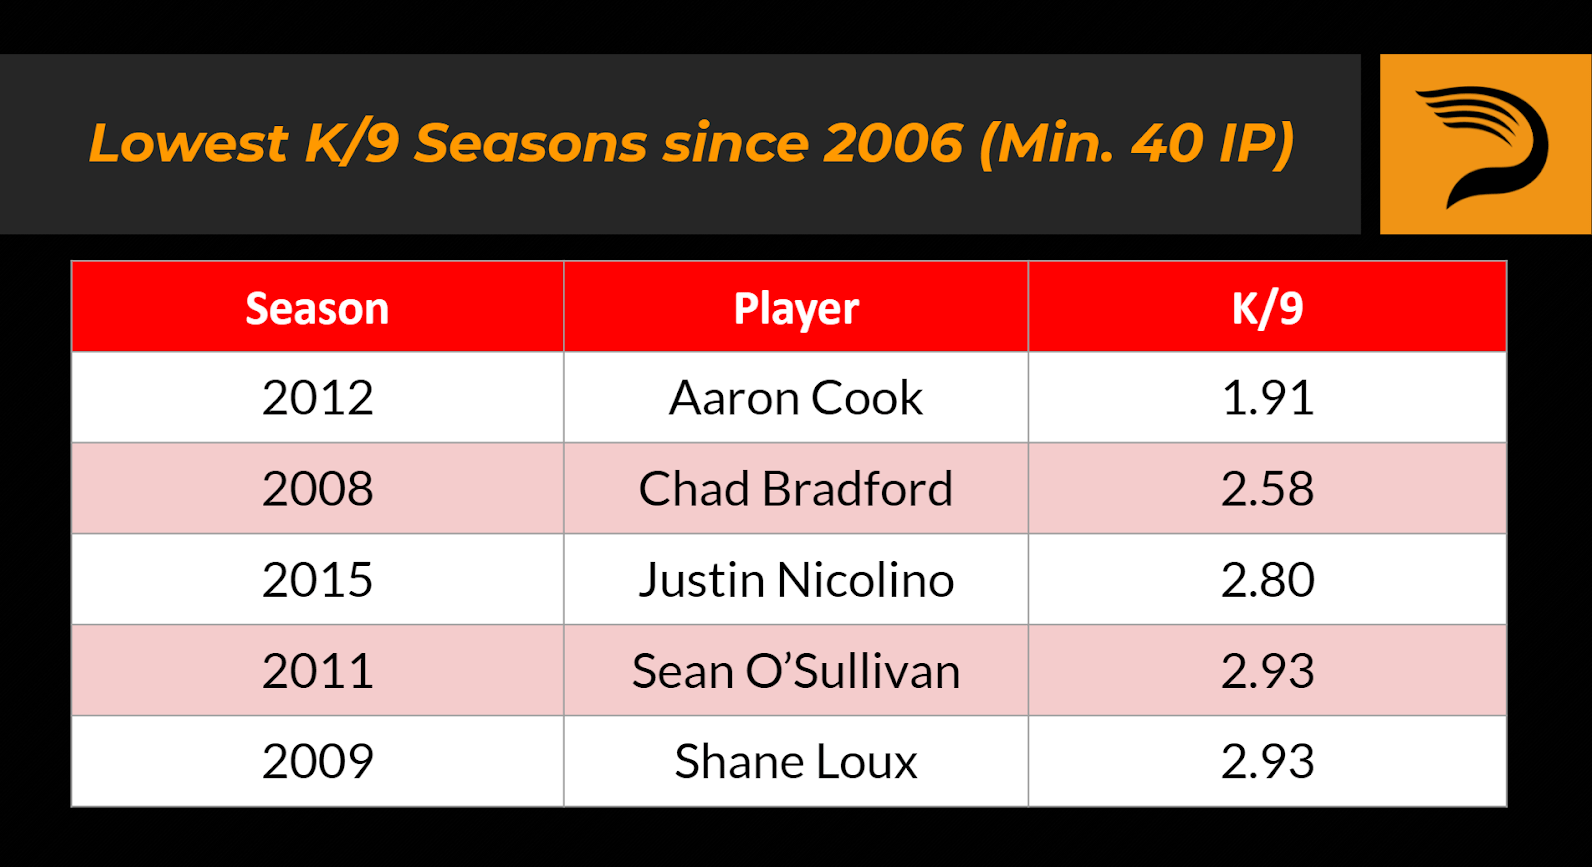 Lowest K/9 seasons since 2006